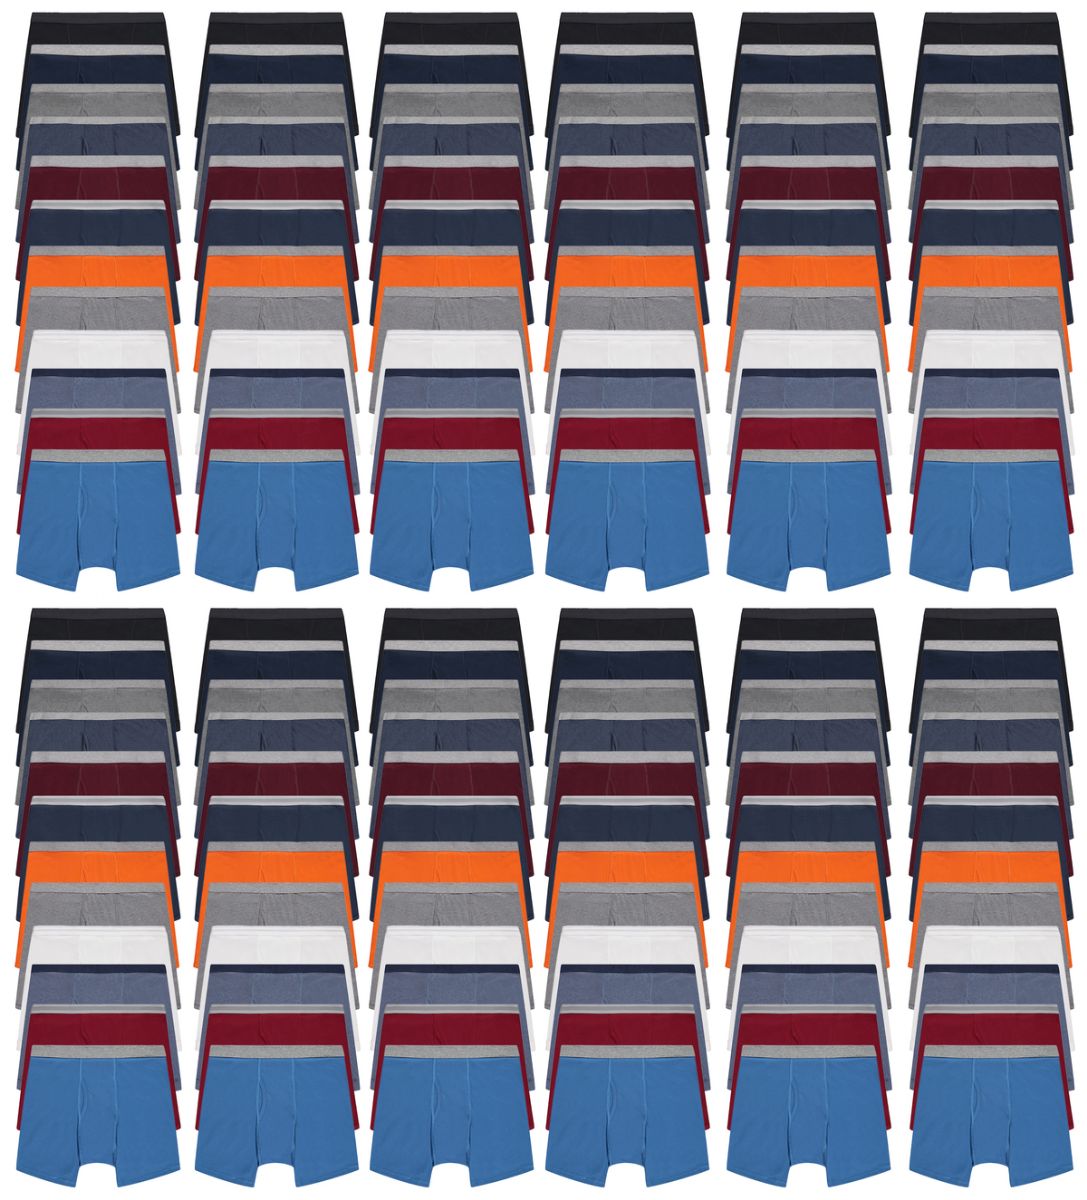 144 Wholesale Men's Cotton Underwear Boxer Briefs In Assorted Colors Size Large